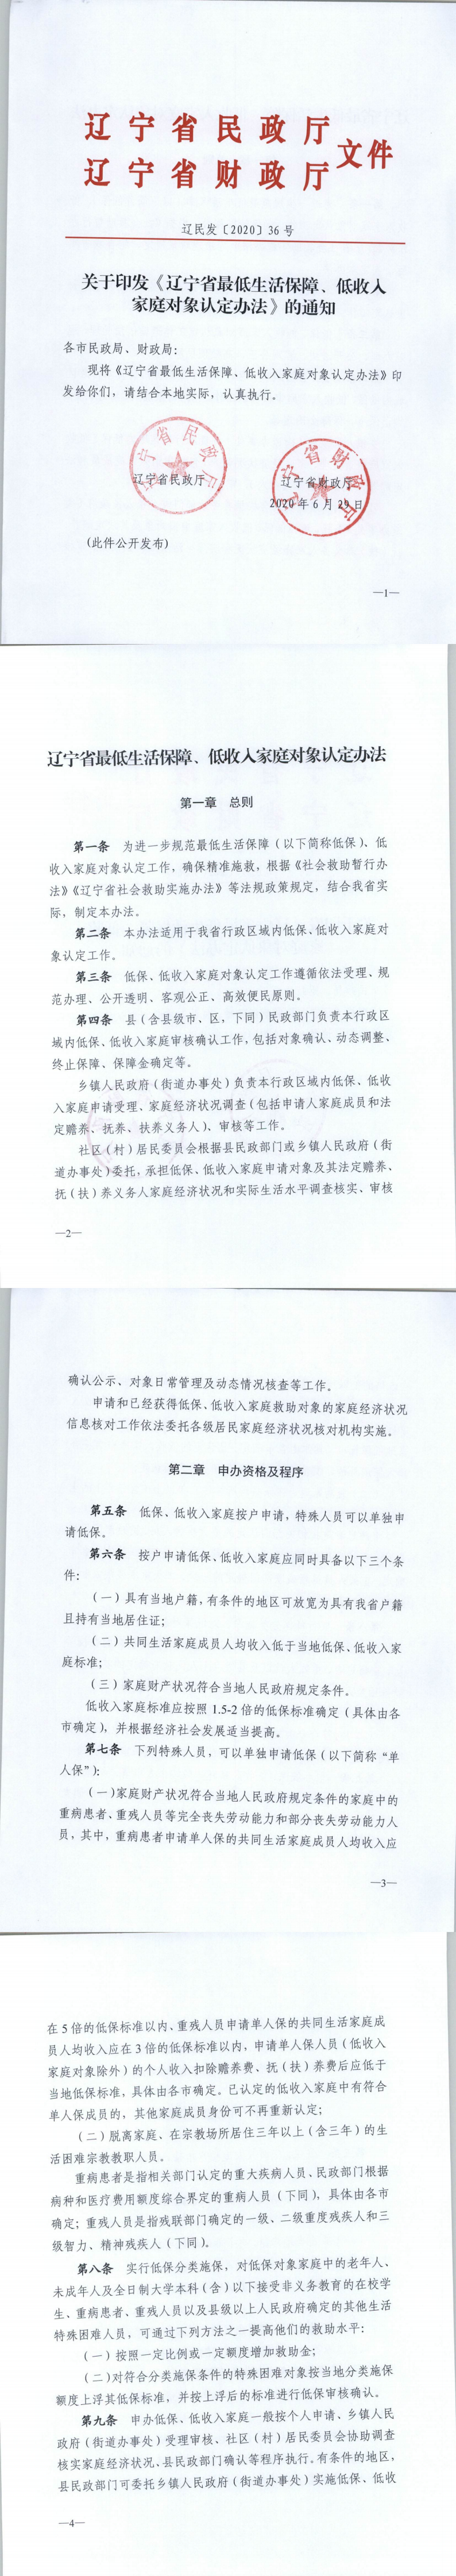 辽宁省最低生活保障、低收入家庭对象认定办法1.png